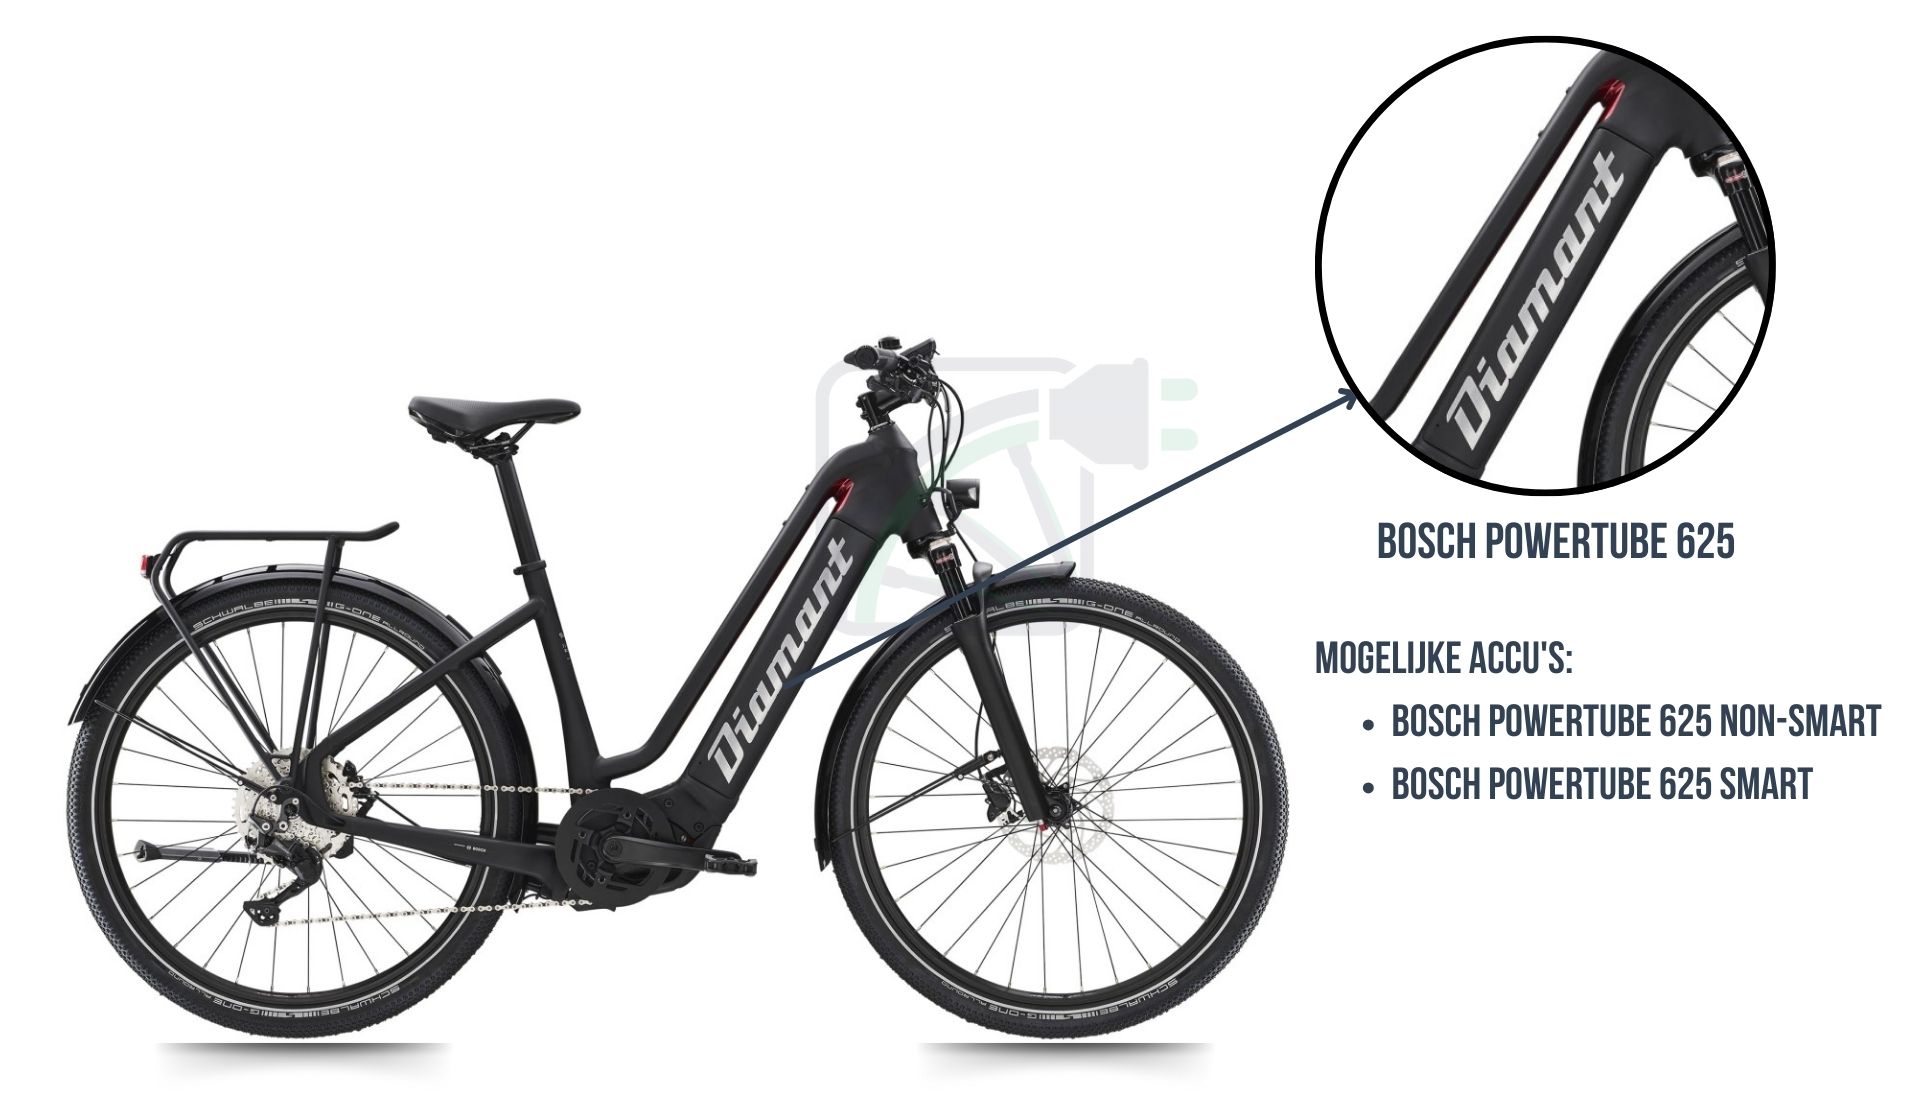 Diamant Zouma elcyklen med fremhævelse af hvilket cykelbatteri der hører til denne cykel. Det er nemlig Bosch Powertube 625 SMART eller Bosch Powertube 625 non-SMART.